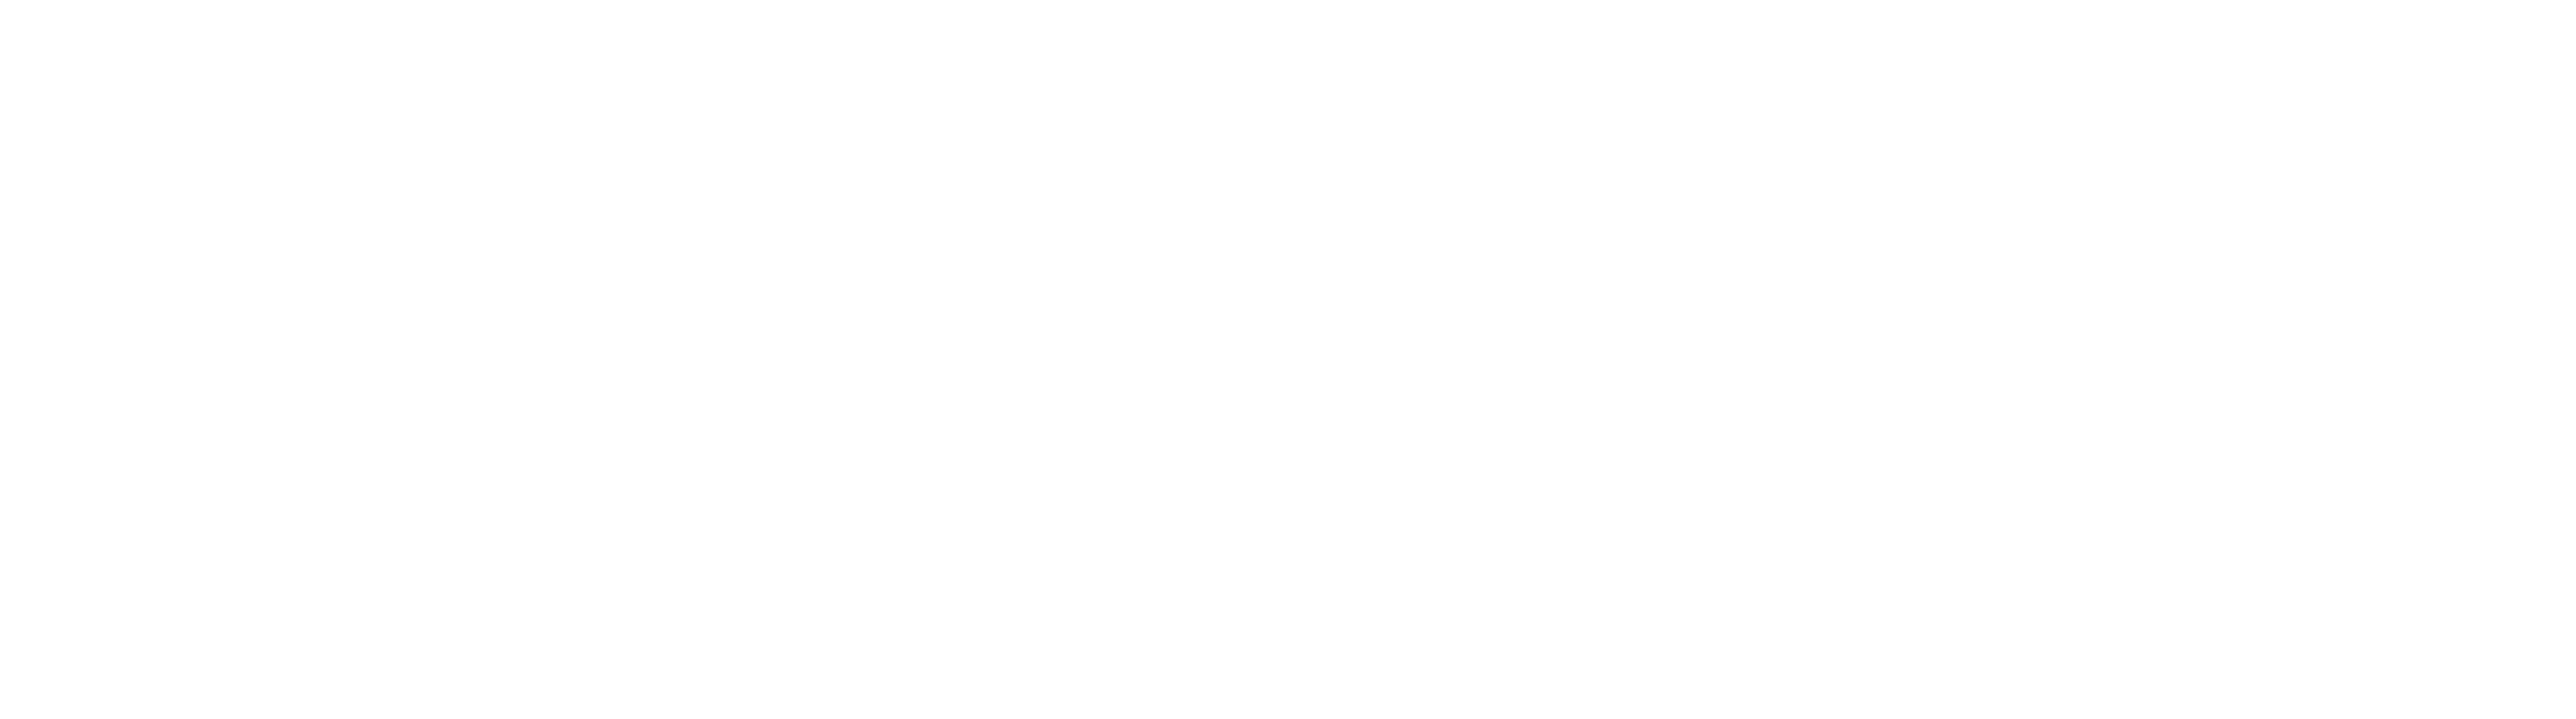 Large AWA Logo